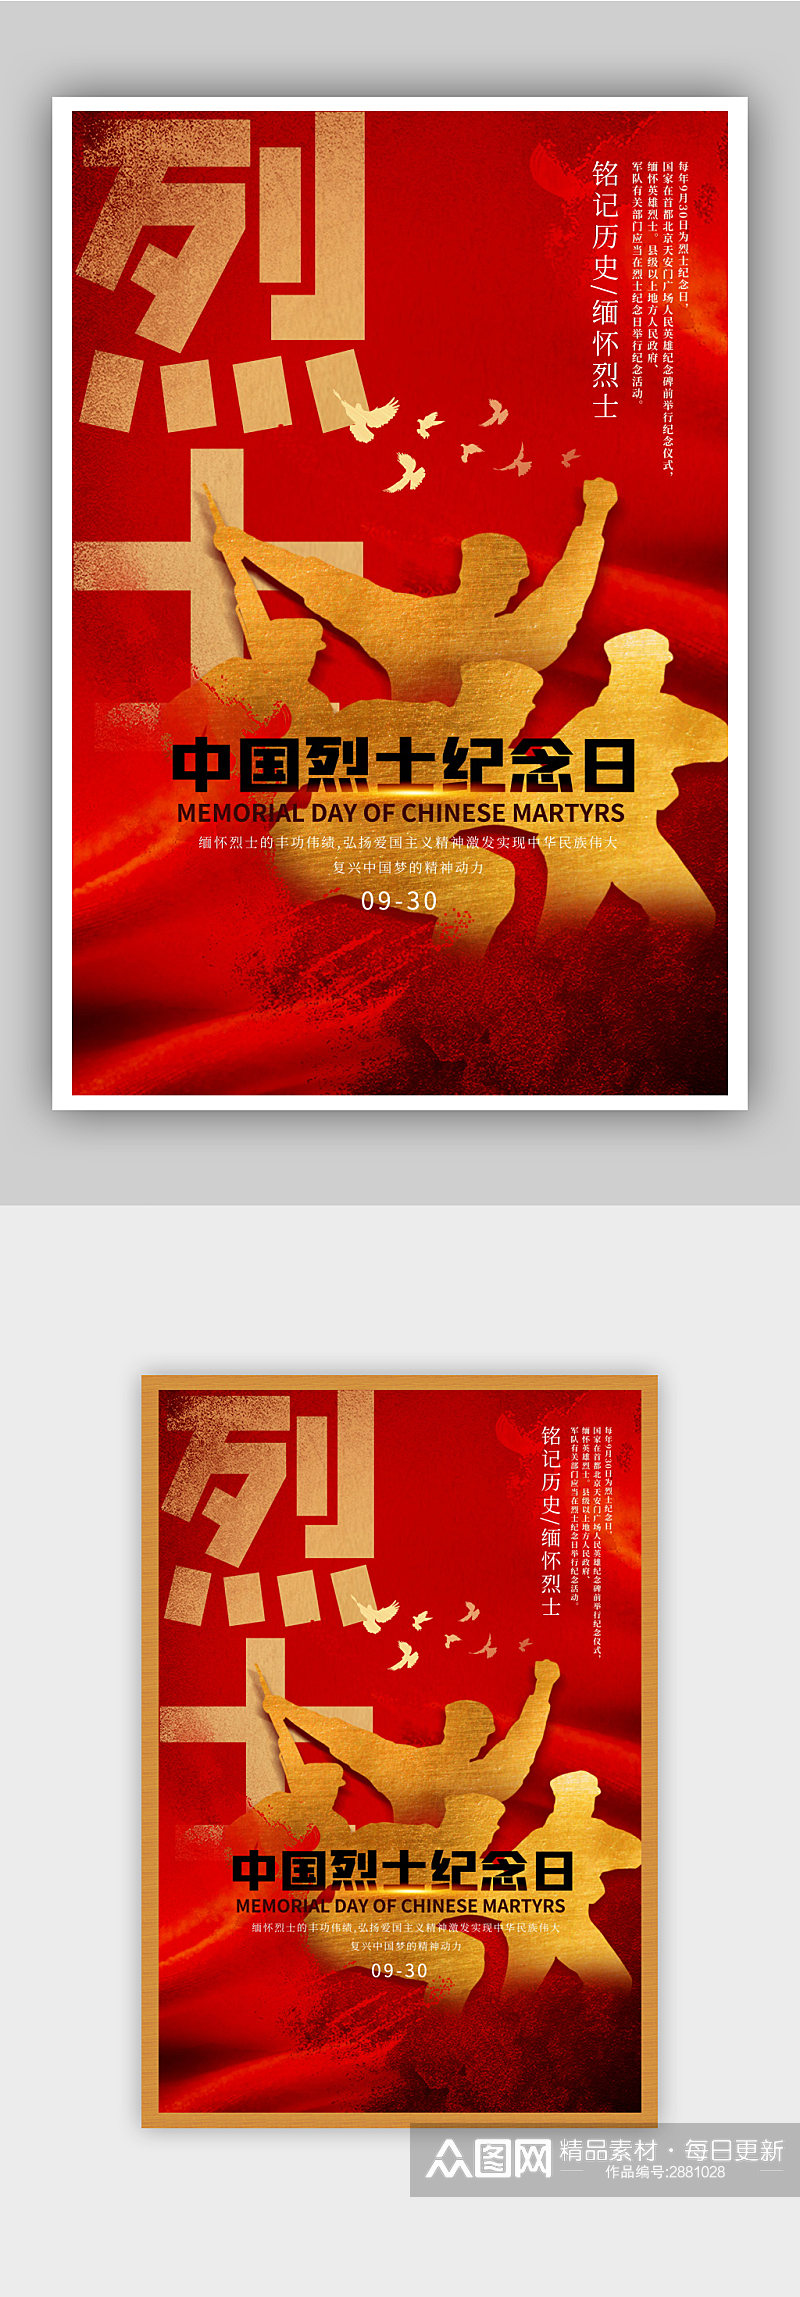 红色中国烈士纪念日海报素材